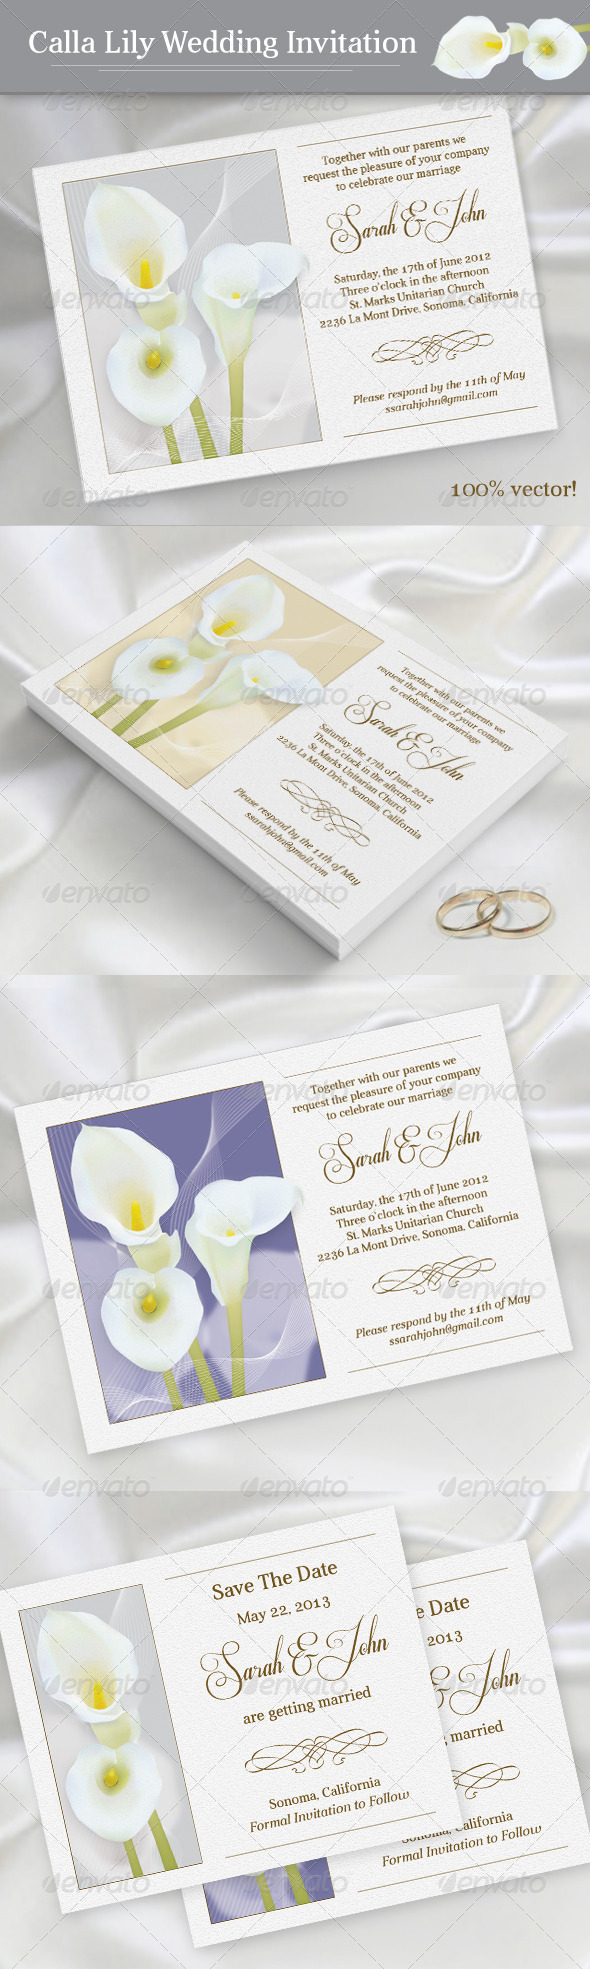 calla-lily-wedding-invitation-by-oleana-graphicriver